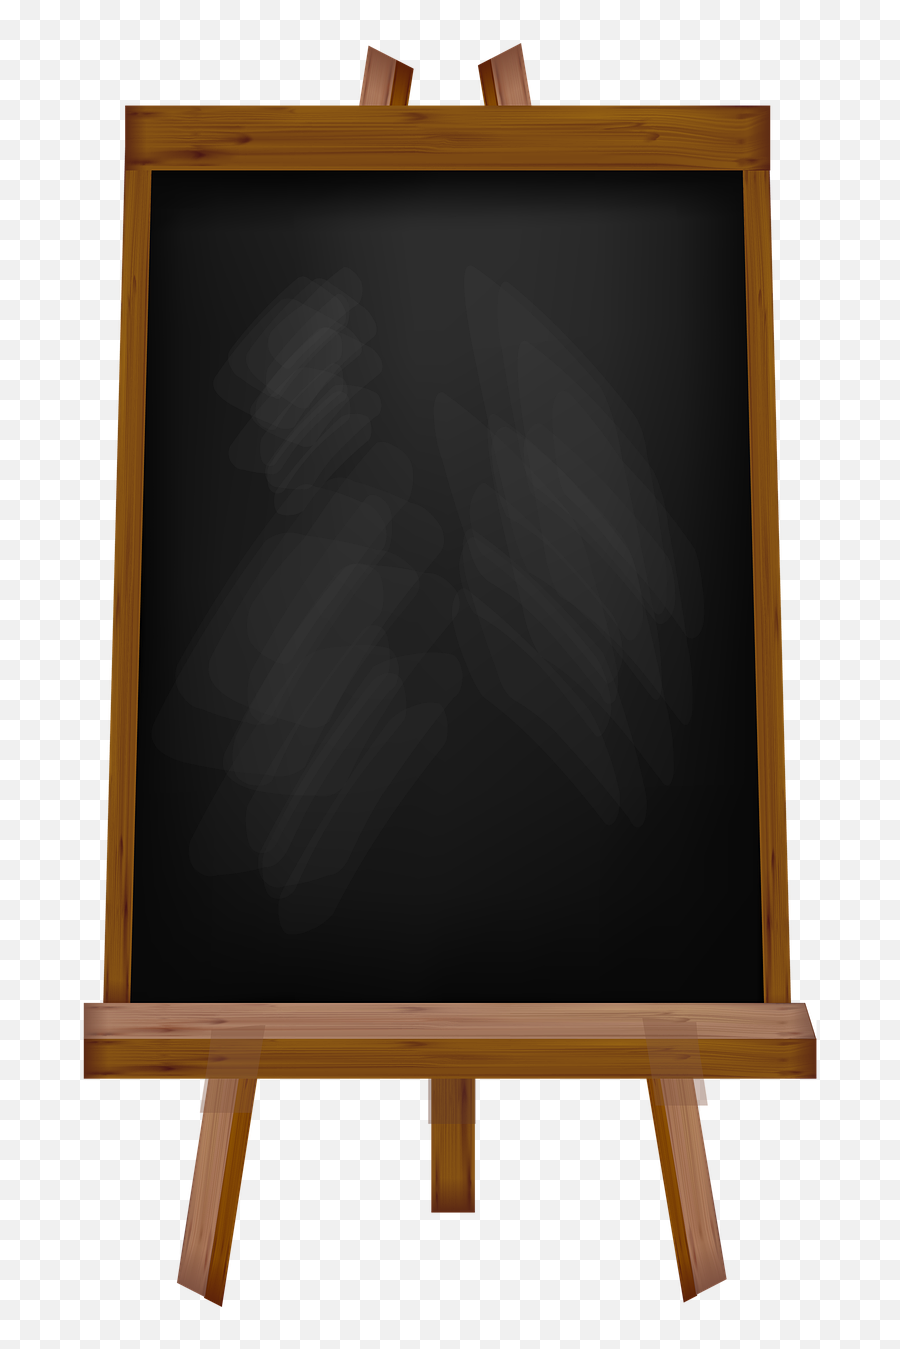 Chalkboard Sign Sandwich Board - Transparent Sandwich Board Png,Chalkboard Png